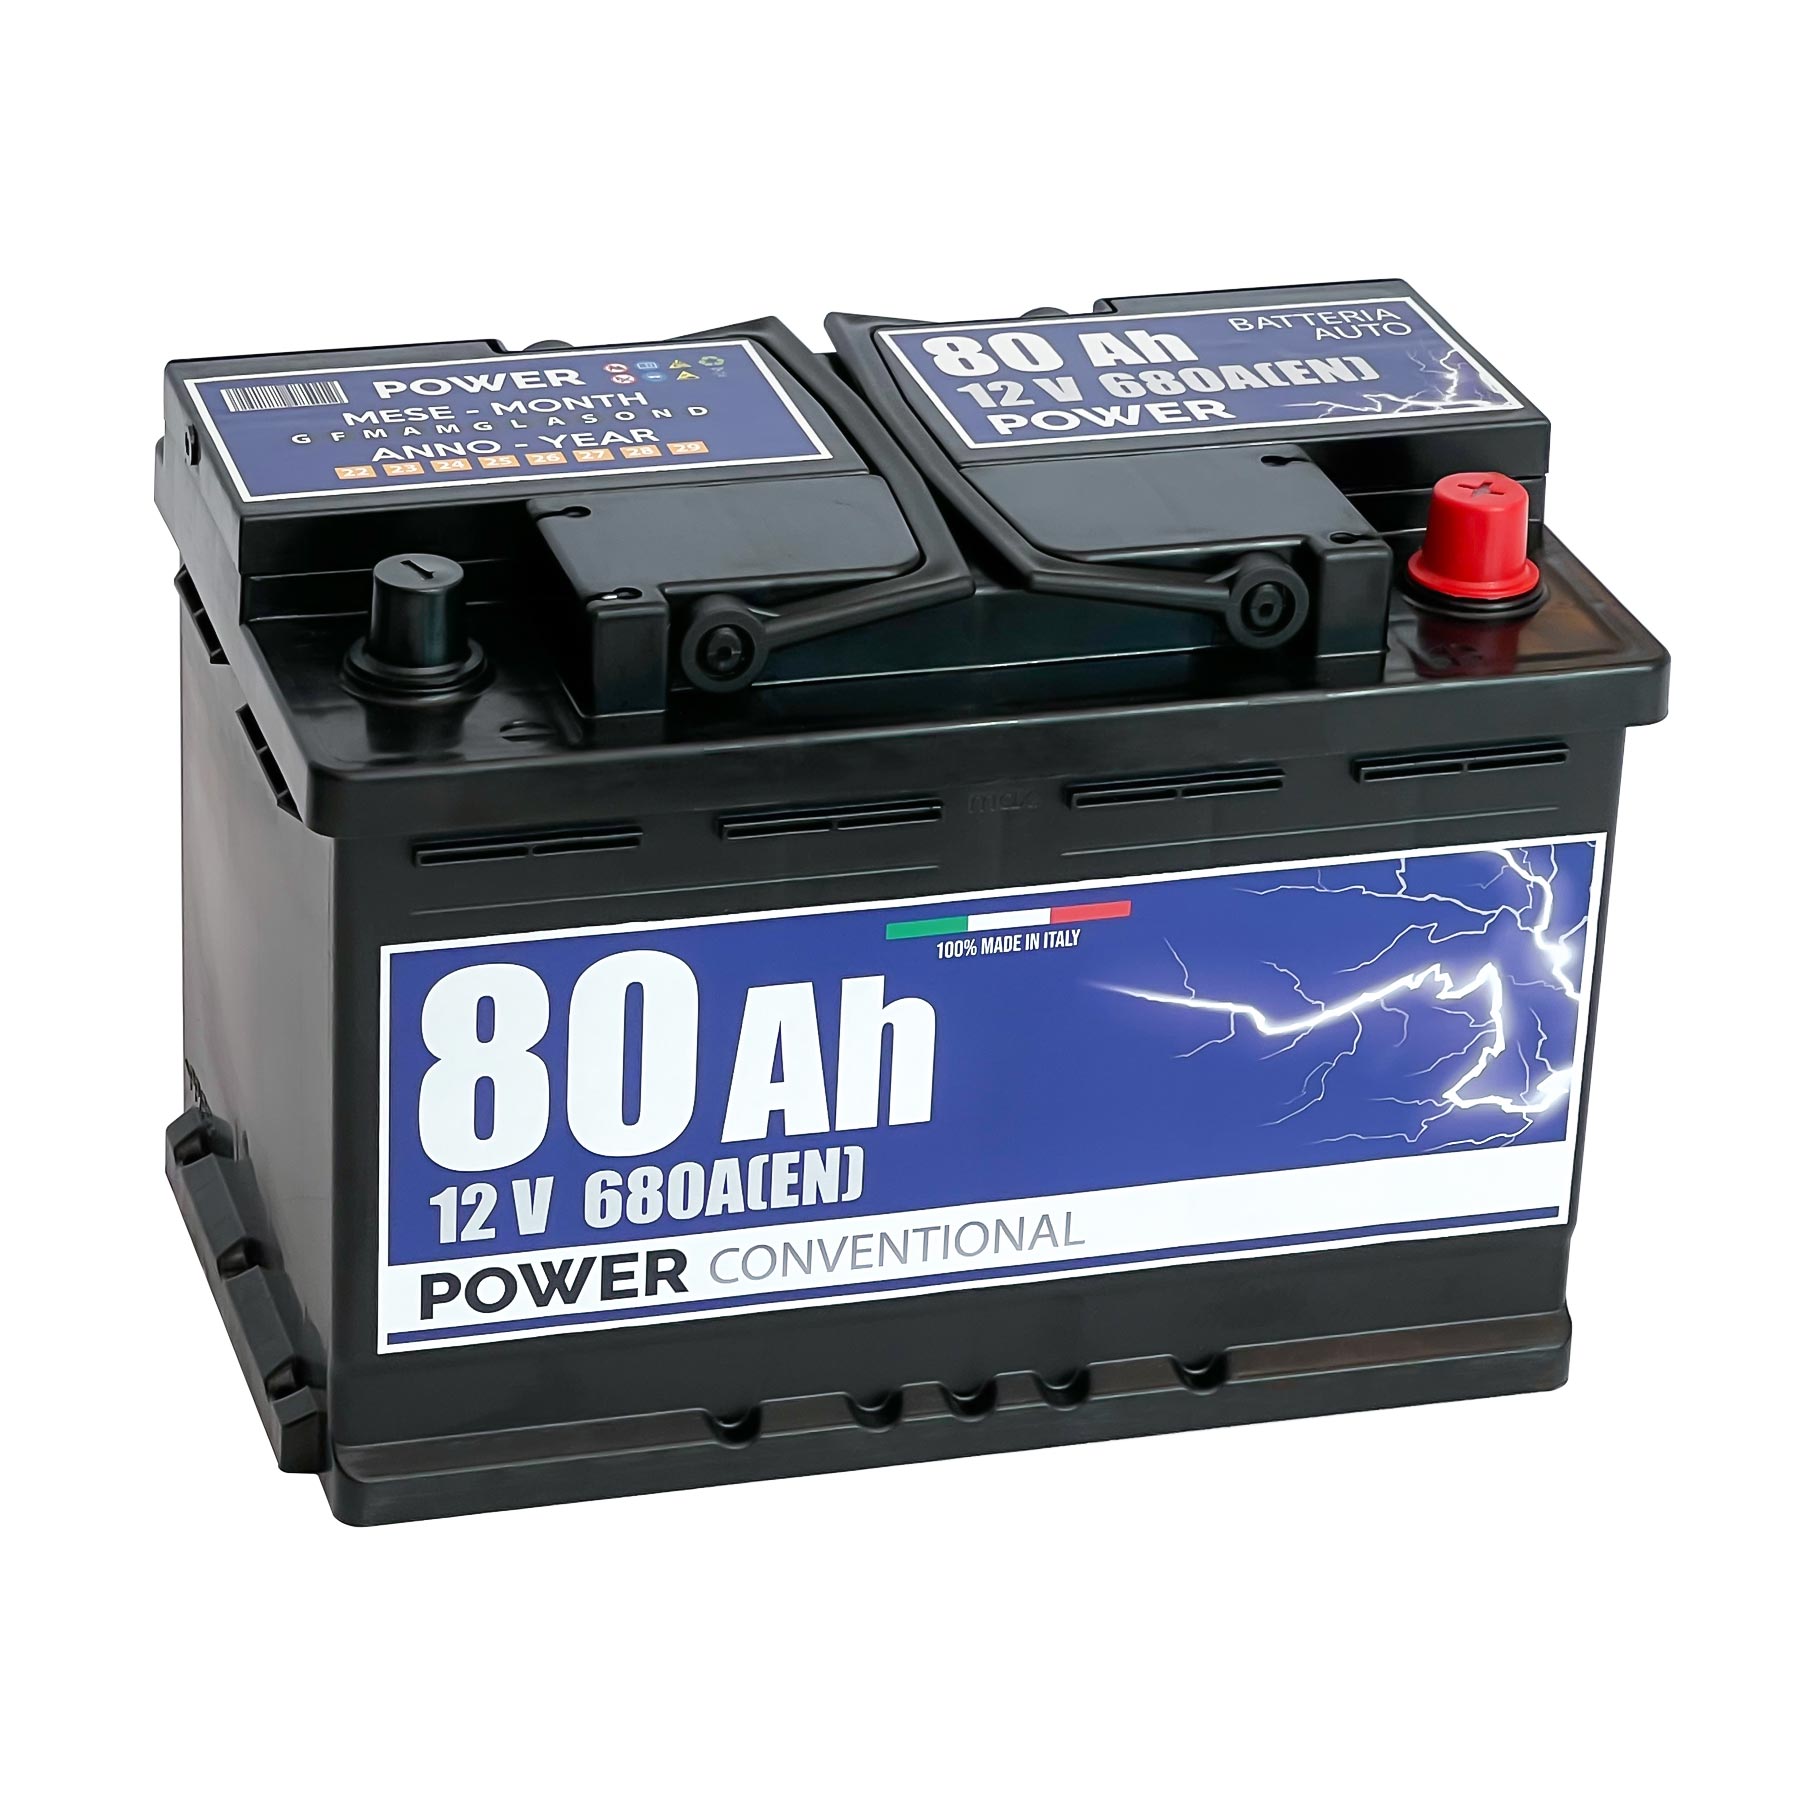 Batteria originale Power Conventional PB800, dimensioni 278 x 175 x 190, polo positivo a destra, 12 volt, 80 amperora, 680 ampere. Batteria per auto e veicoli leggeri.